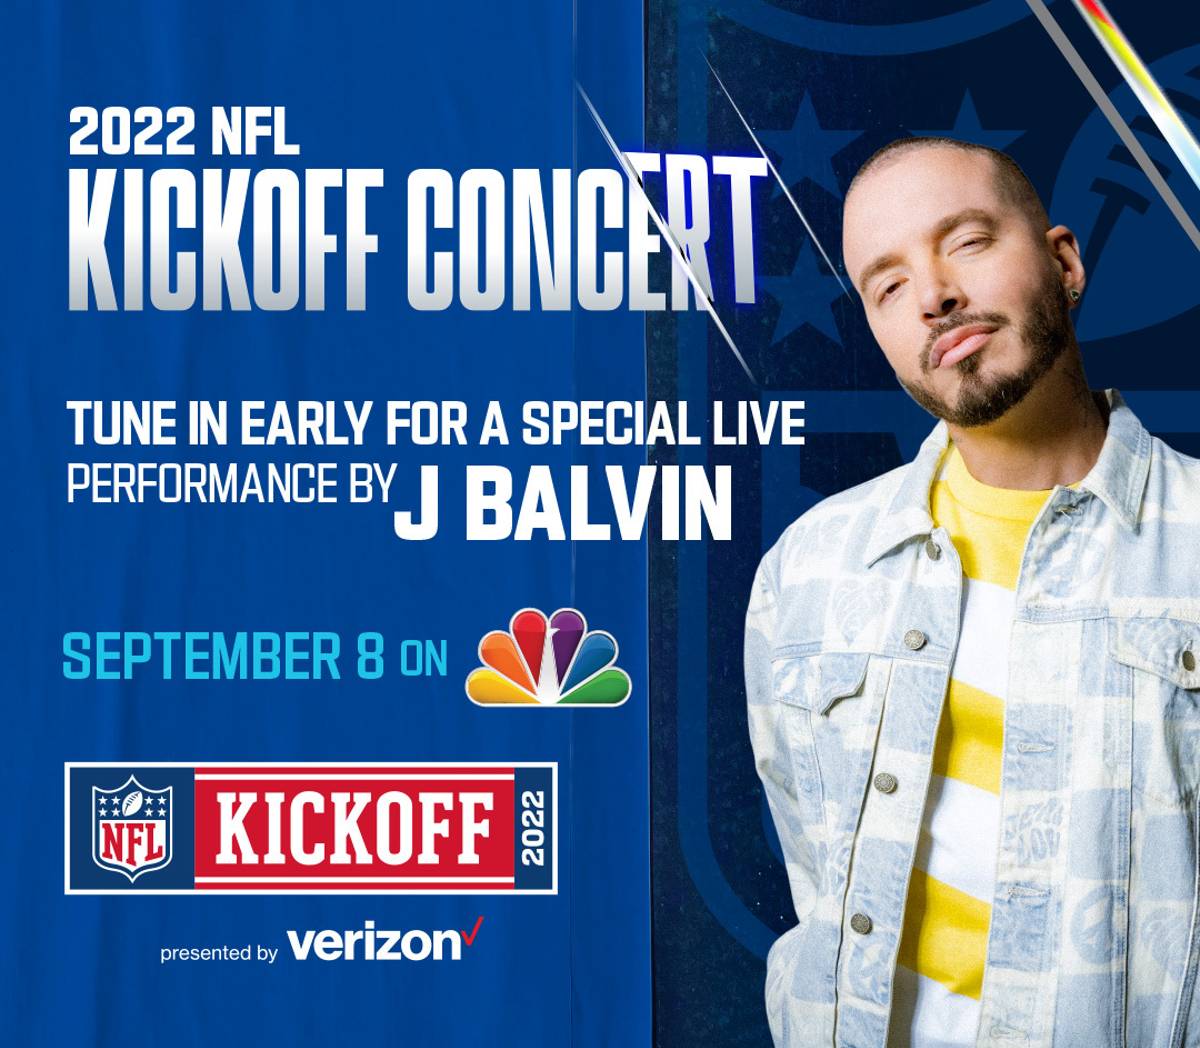 J Balvin será uno de los artistas principales que abrirán el concierto del NFL Kickoff 2022.